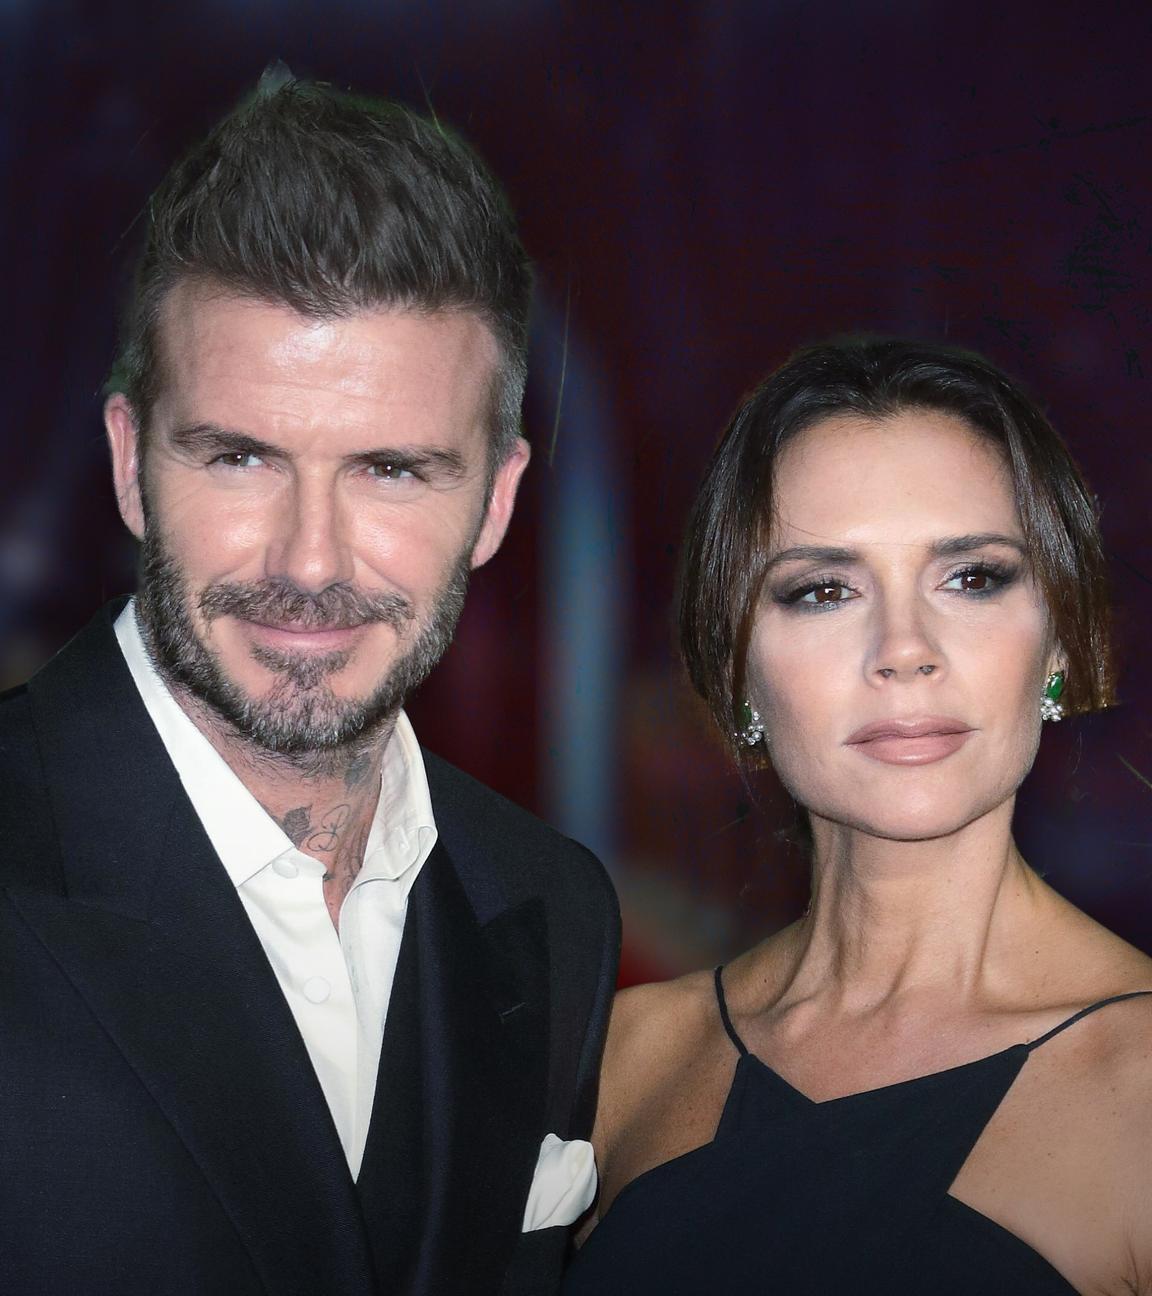 David und Victoria Beckham bei den Fashion Awards 2018 in London.